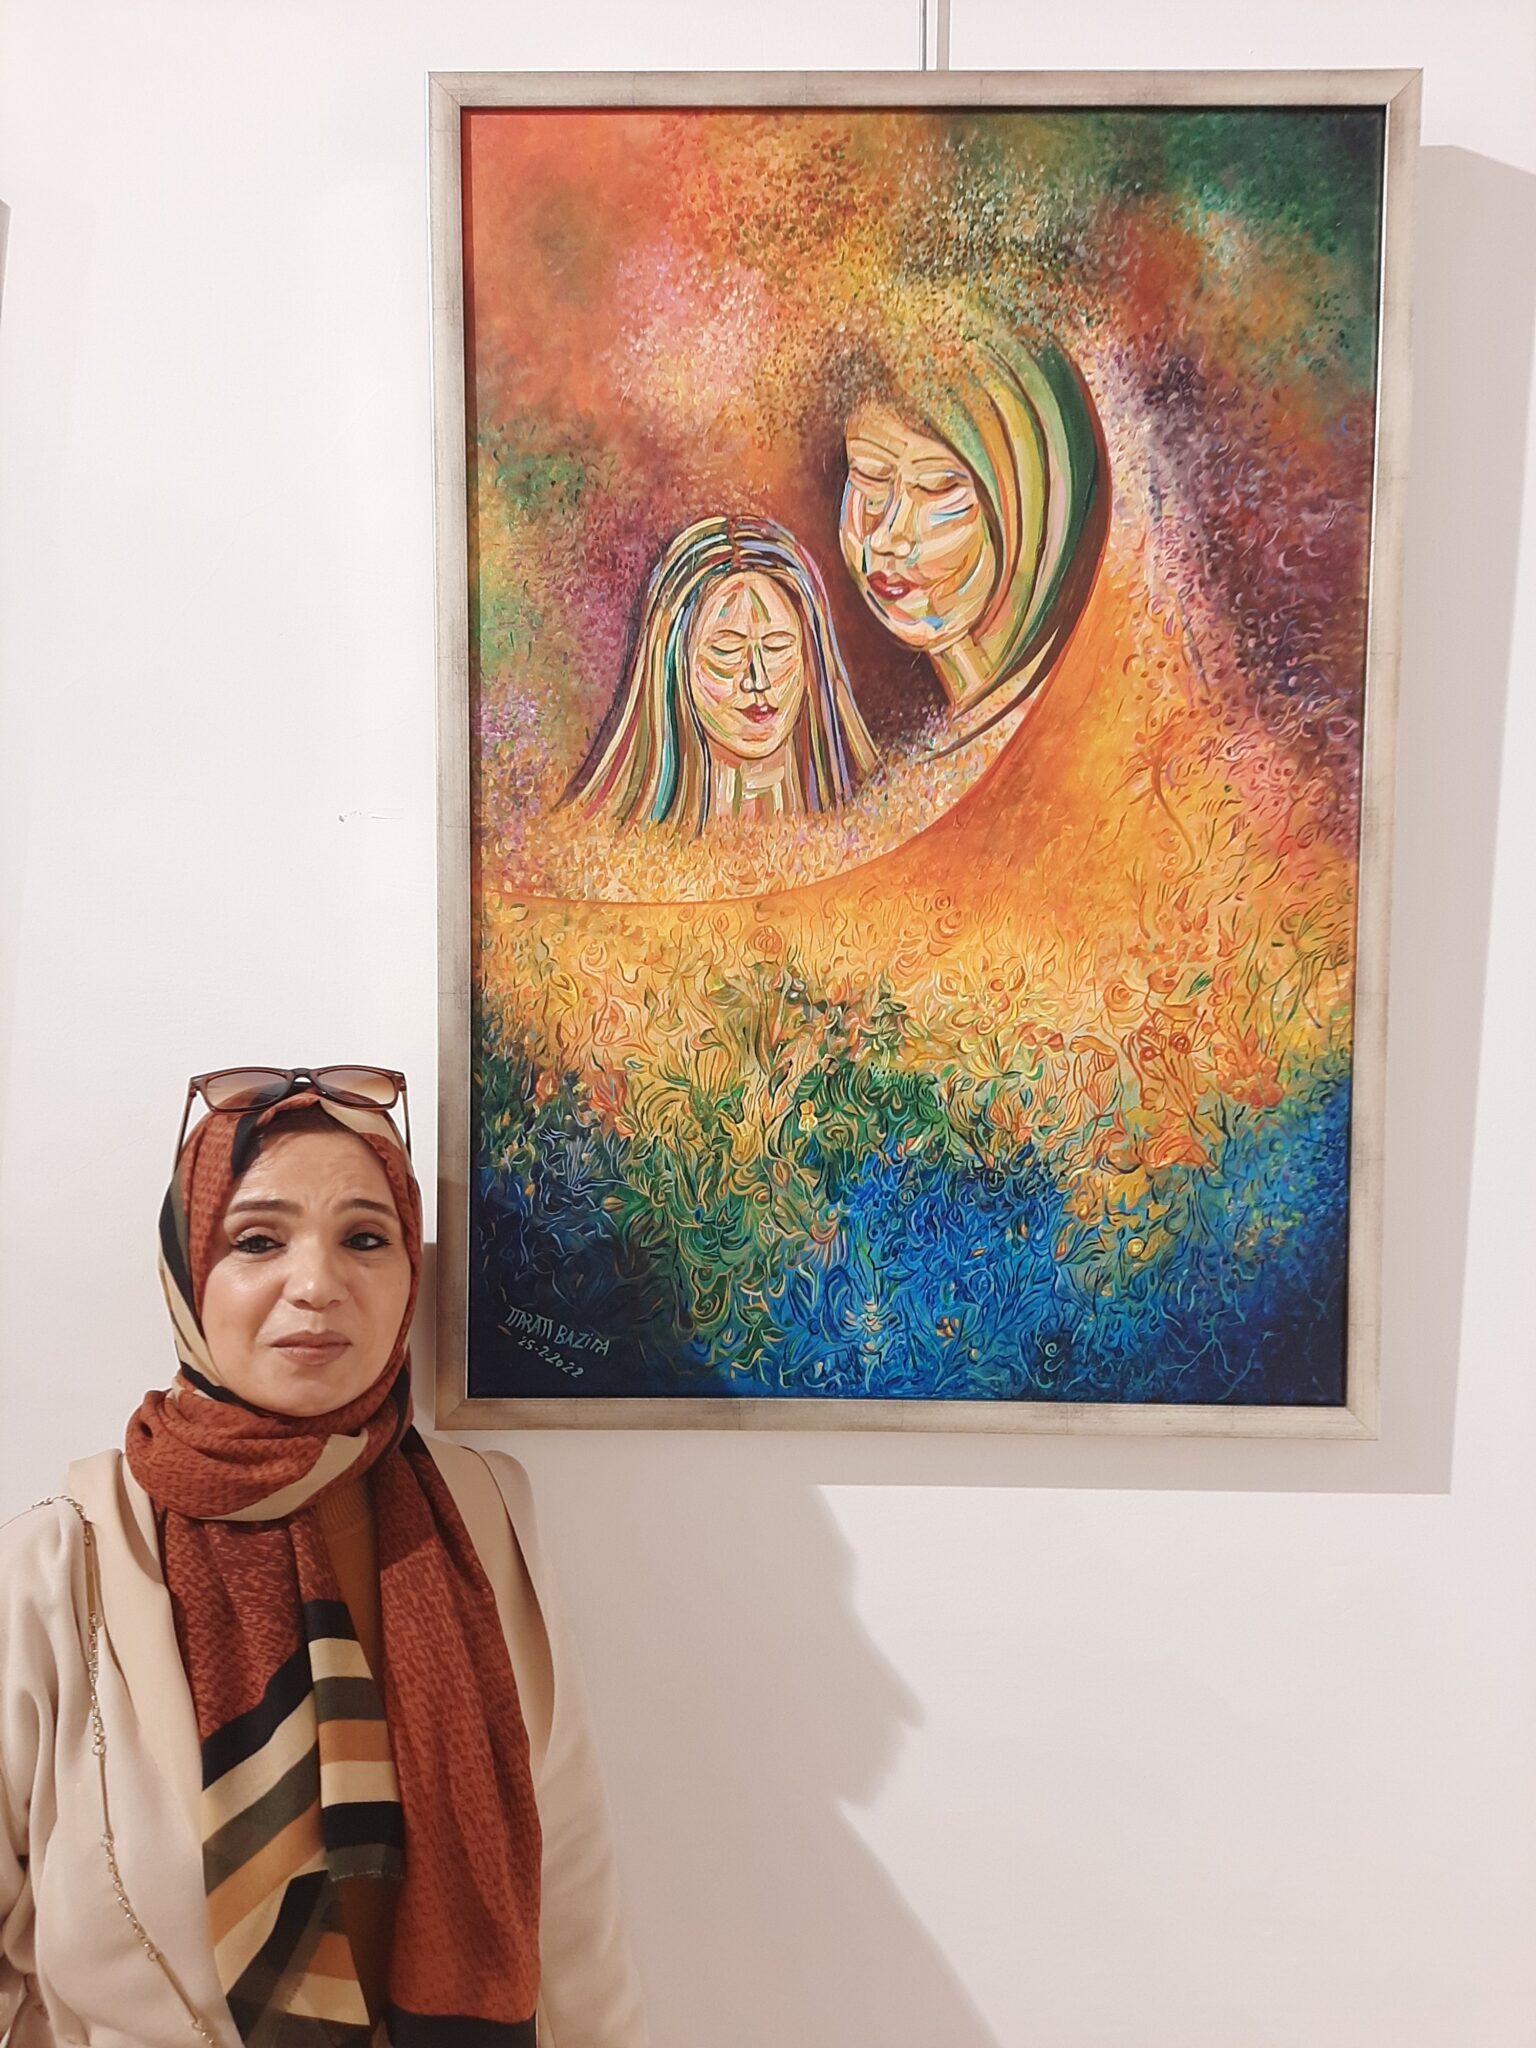 الفنانة مريم عيسى بازينة أحد المشاركين بالمعرض